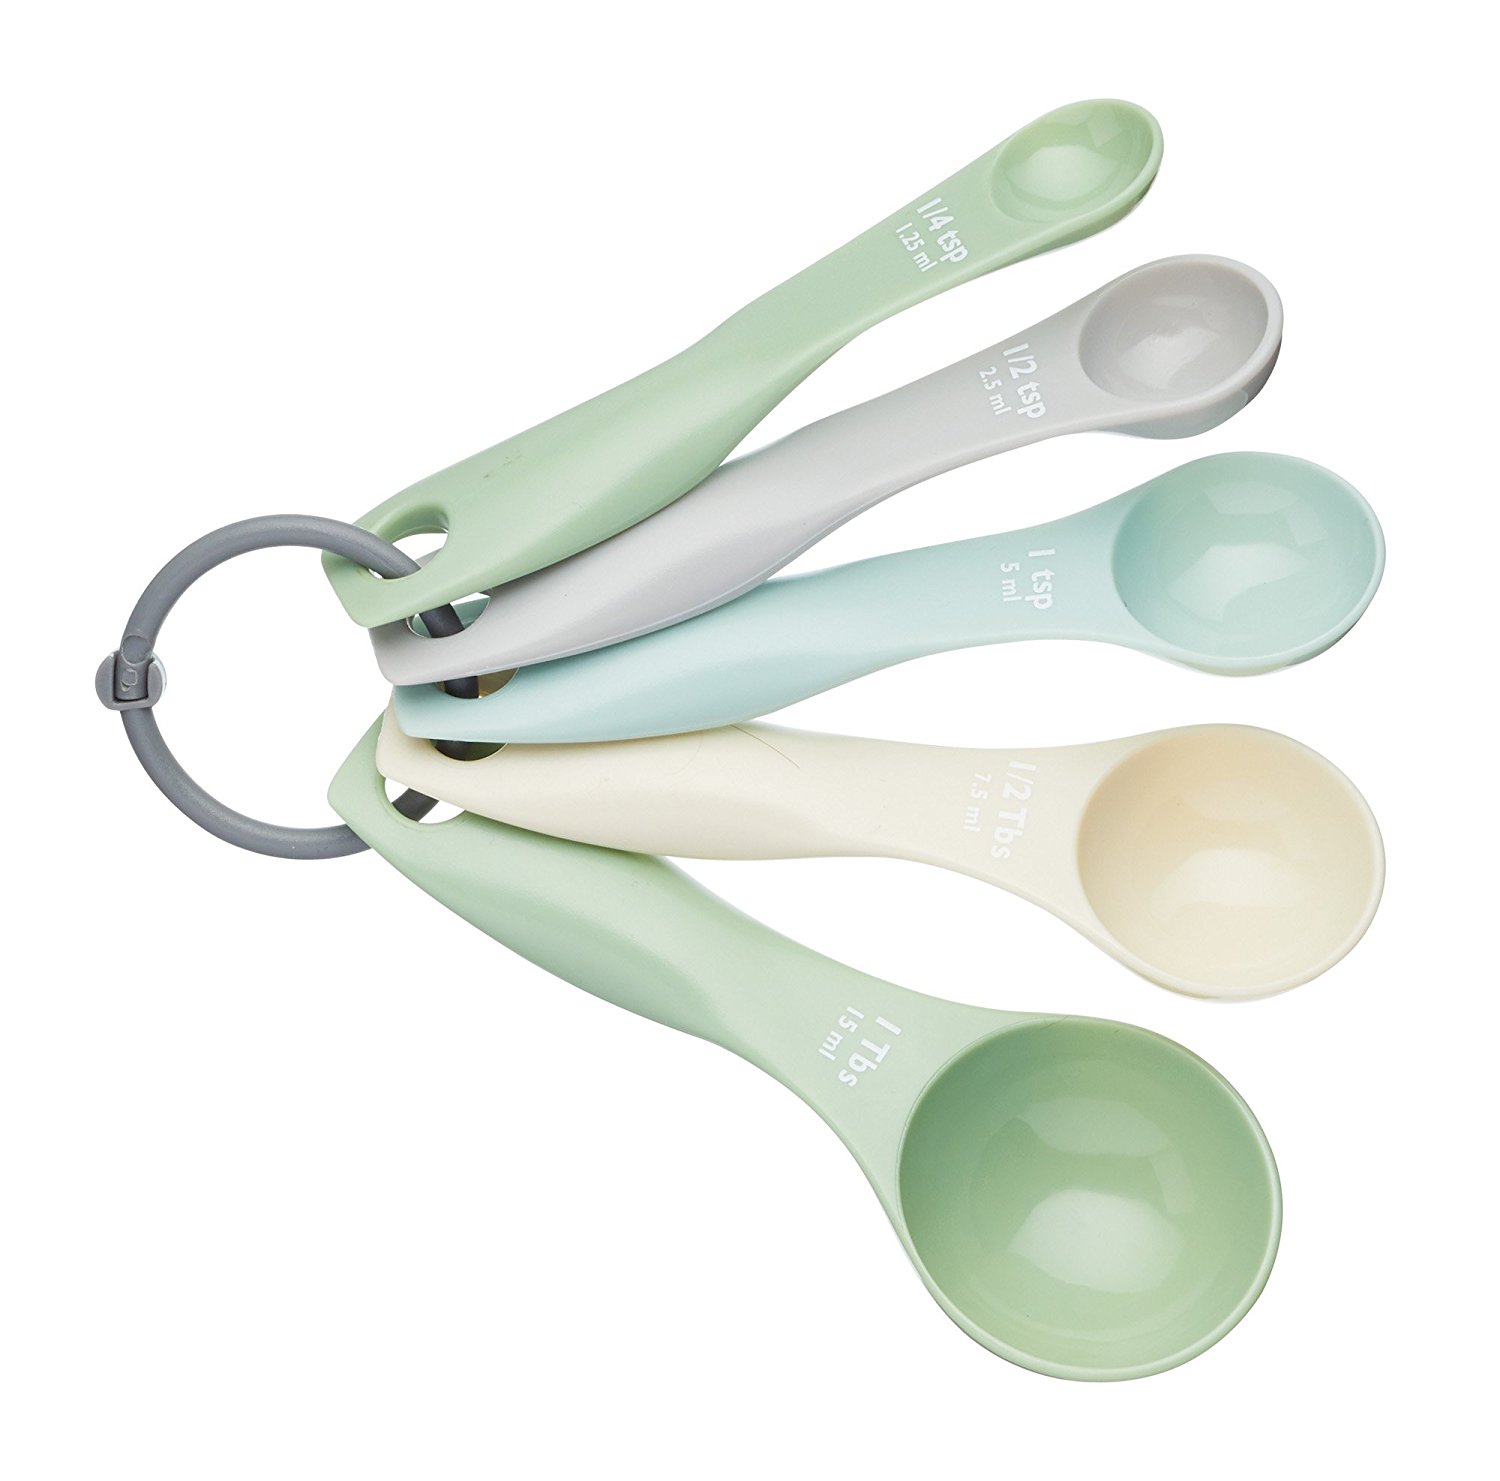 Imagen de producto: Set de 5 cucharas medidoras de plástico